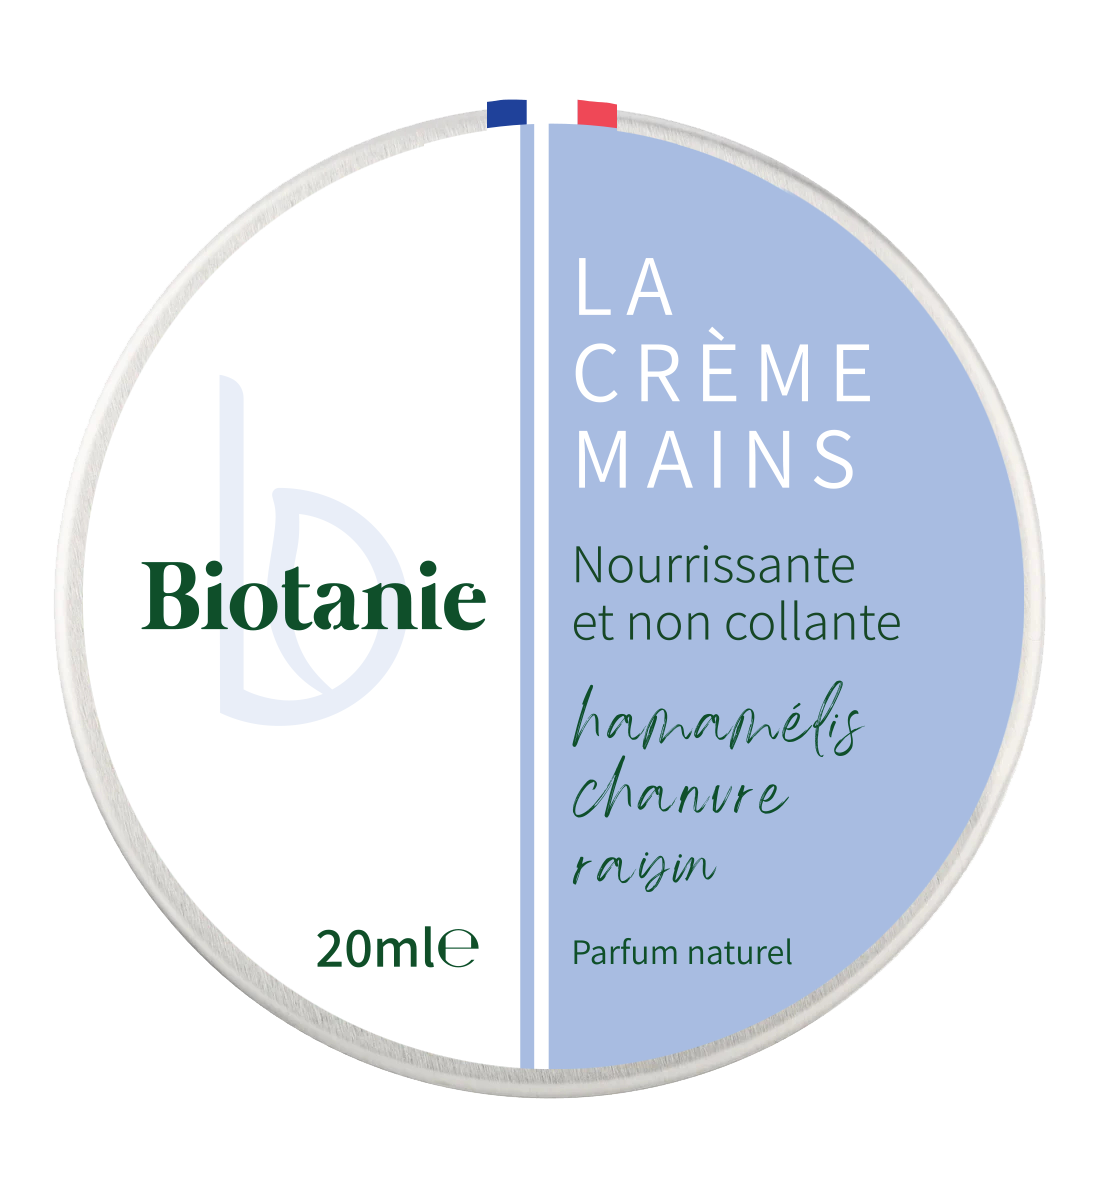 La crème mains Biotanie, créée pour répondre aux besoins d'Anthony Martin souffrant de psoriasis et d'eczéma.